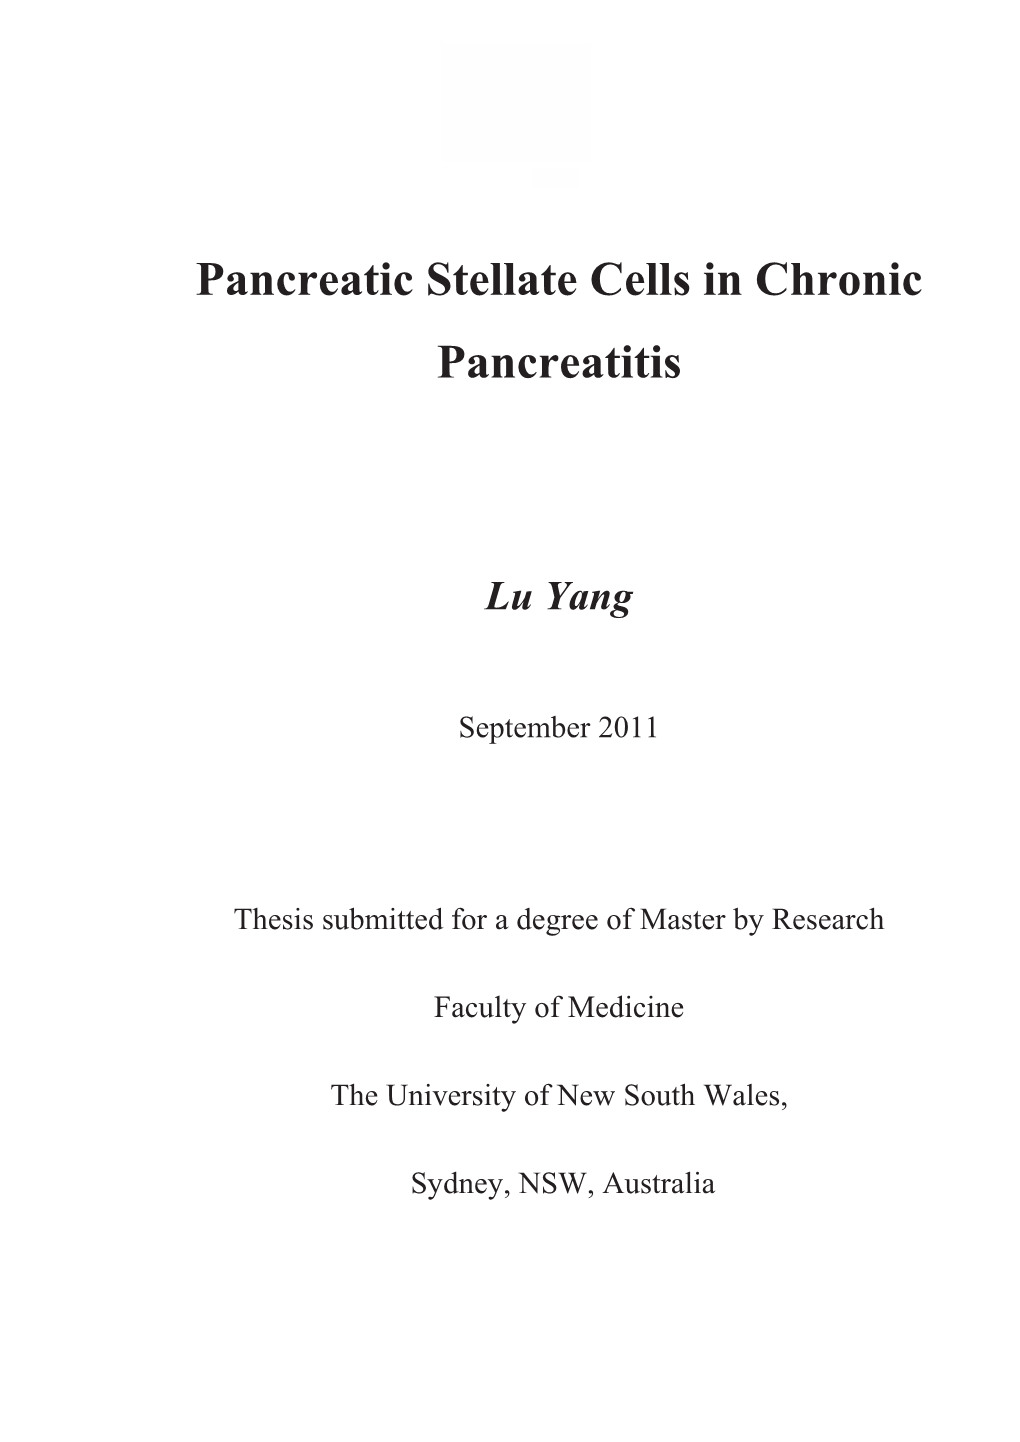 Pancreatic Stellate Cells in Chronic Pancreatitis